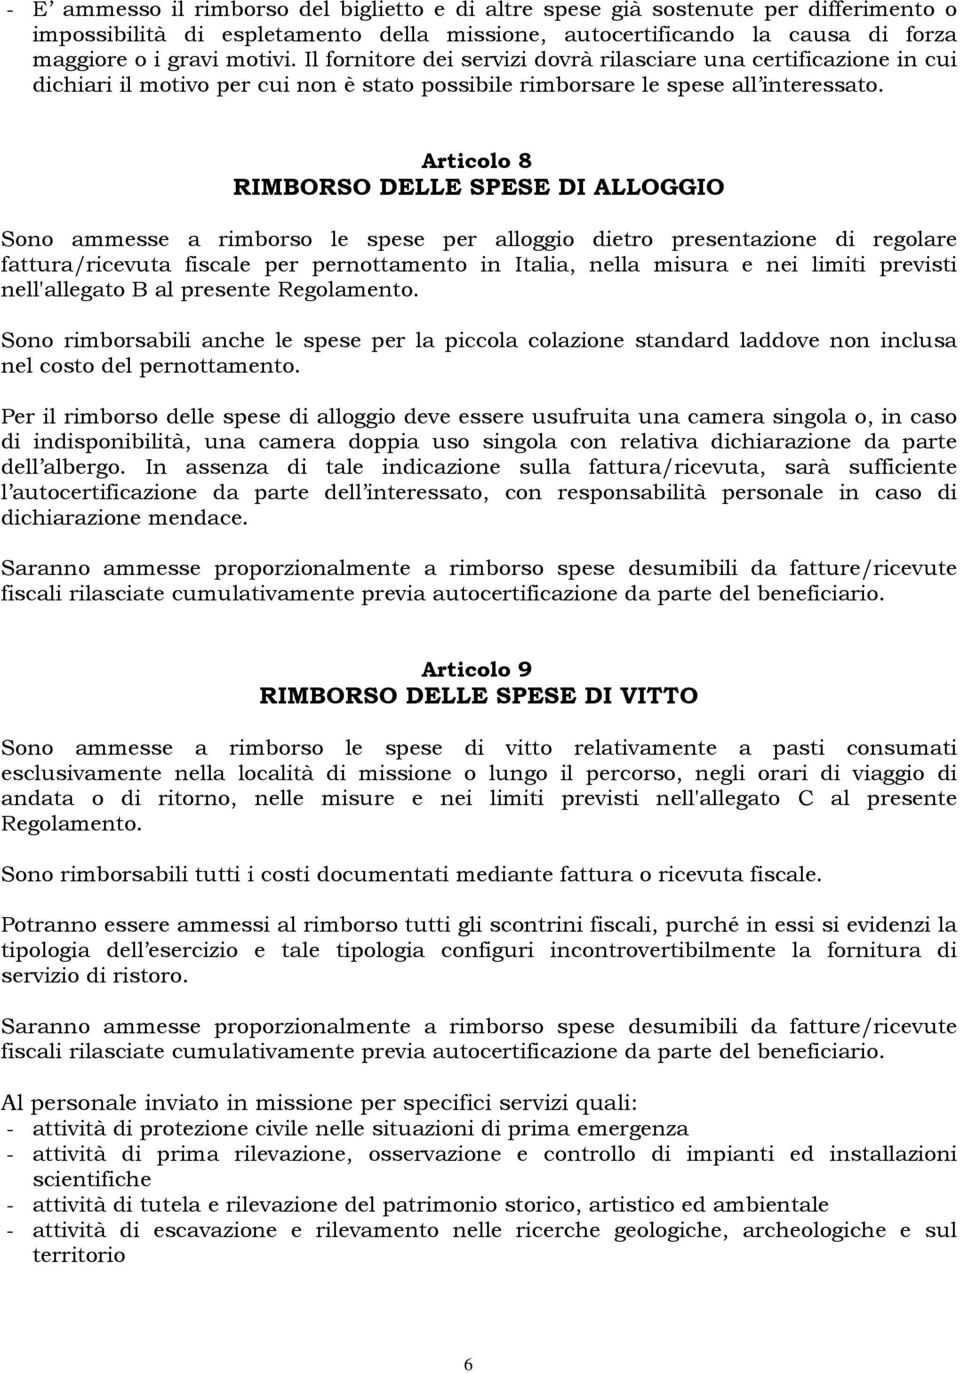 Articolo 8 RIMBORSO DELLE SPESE DI ALLOGGIO Sono ammesse a rimborso le spese per alloggio dietro presentazione di regolare fattura/ricevuta fiscale per pernottamento in Italia, nella misura e nei